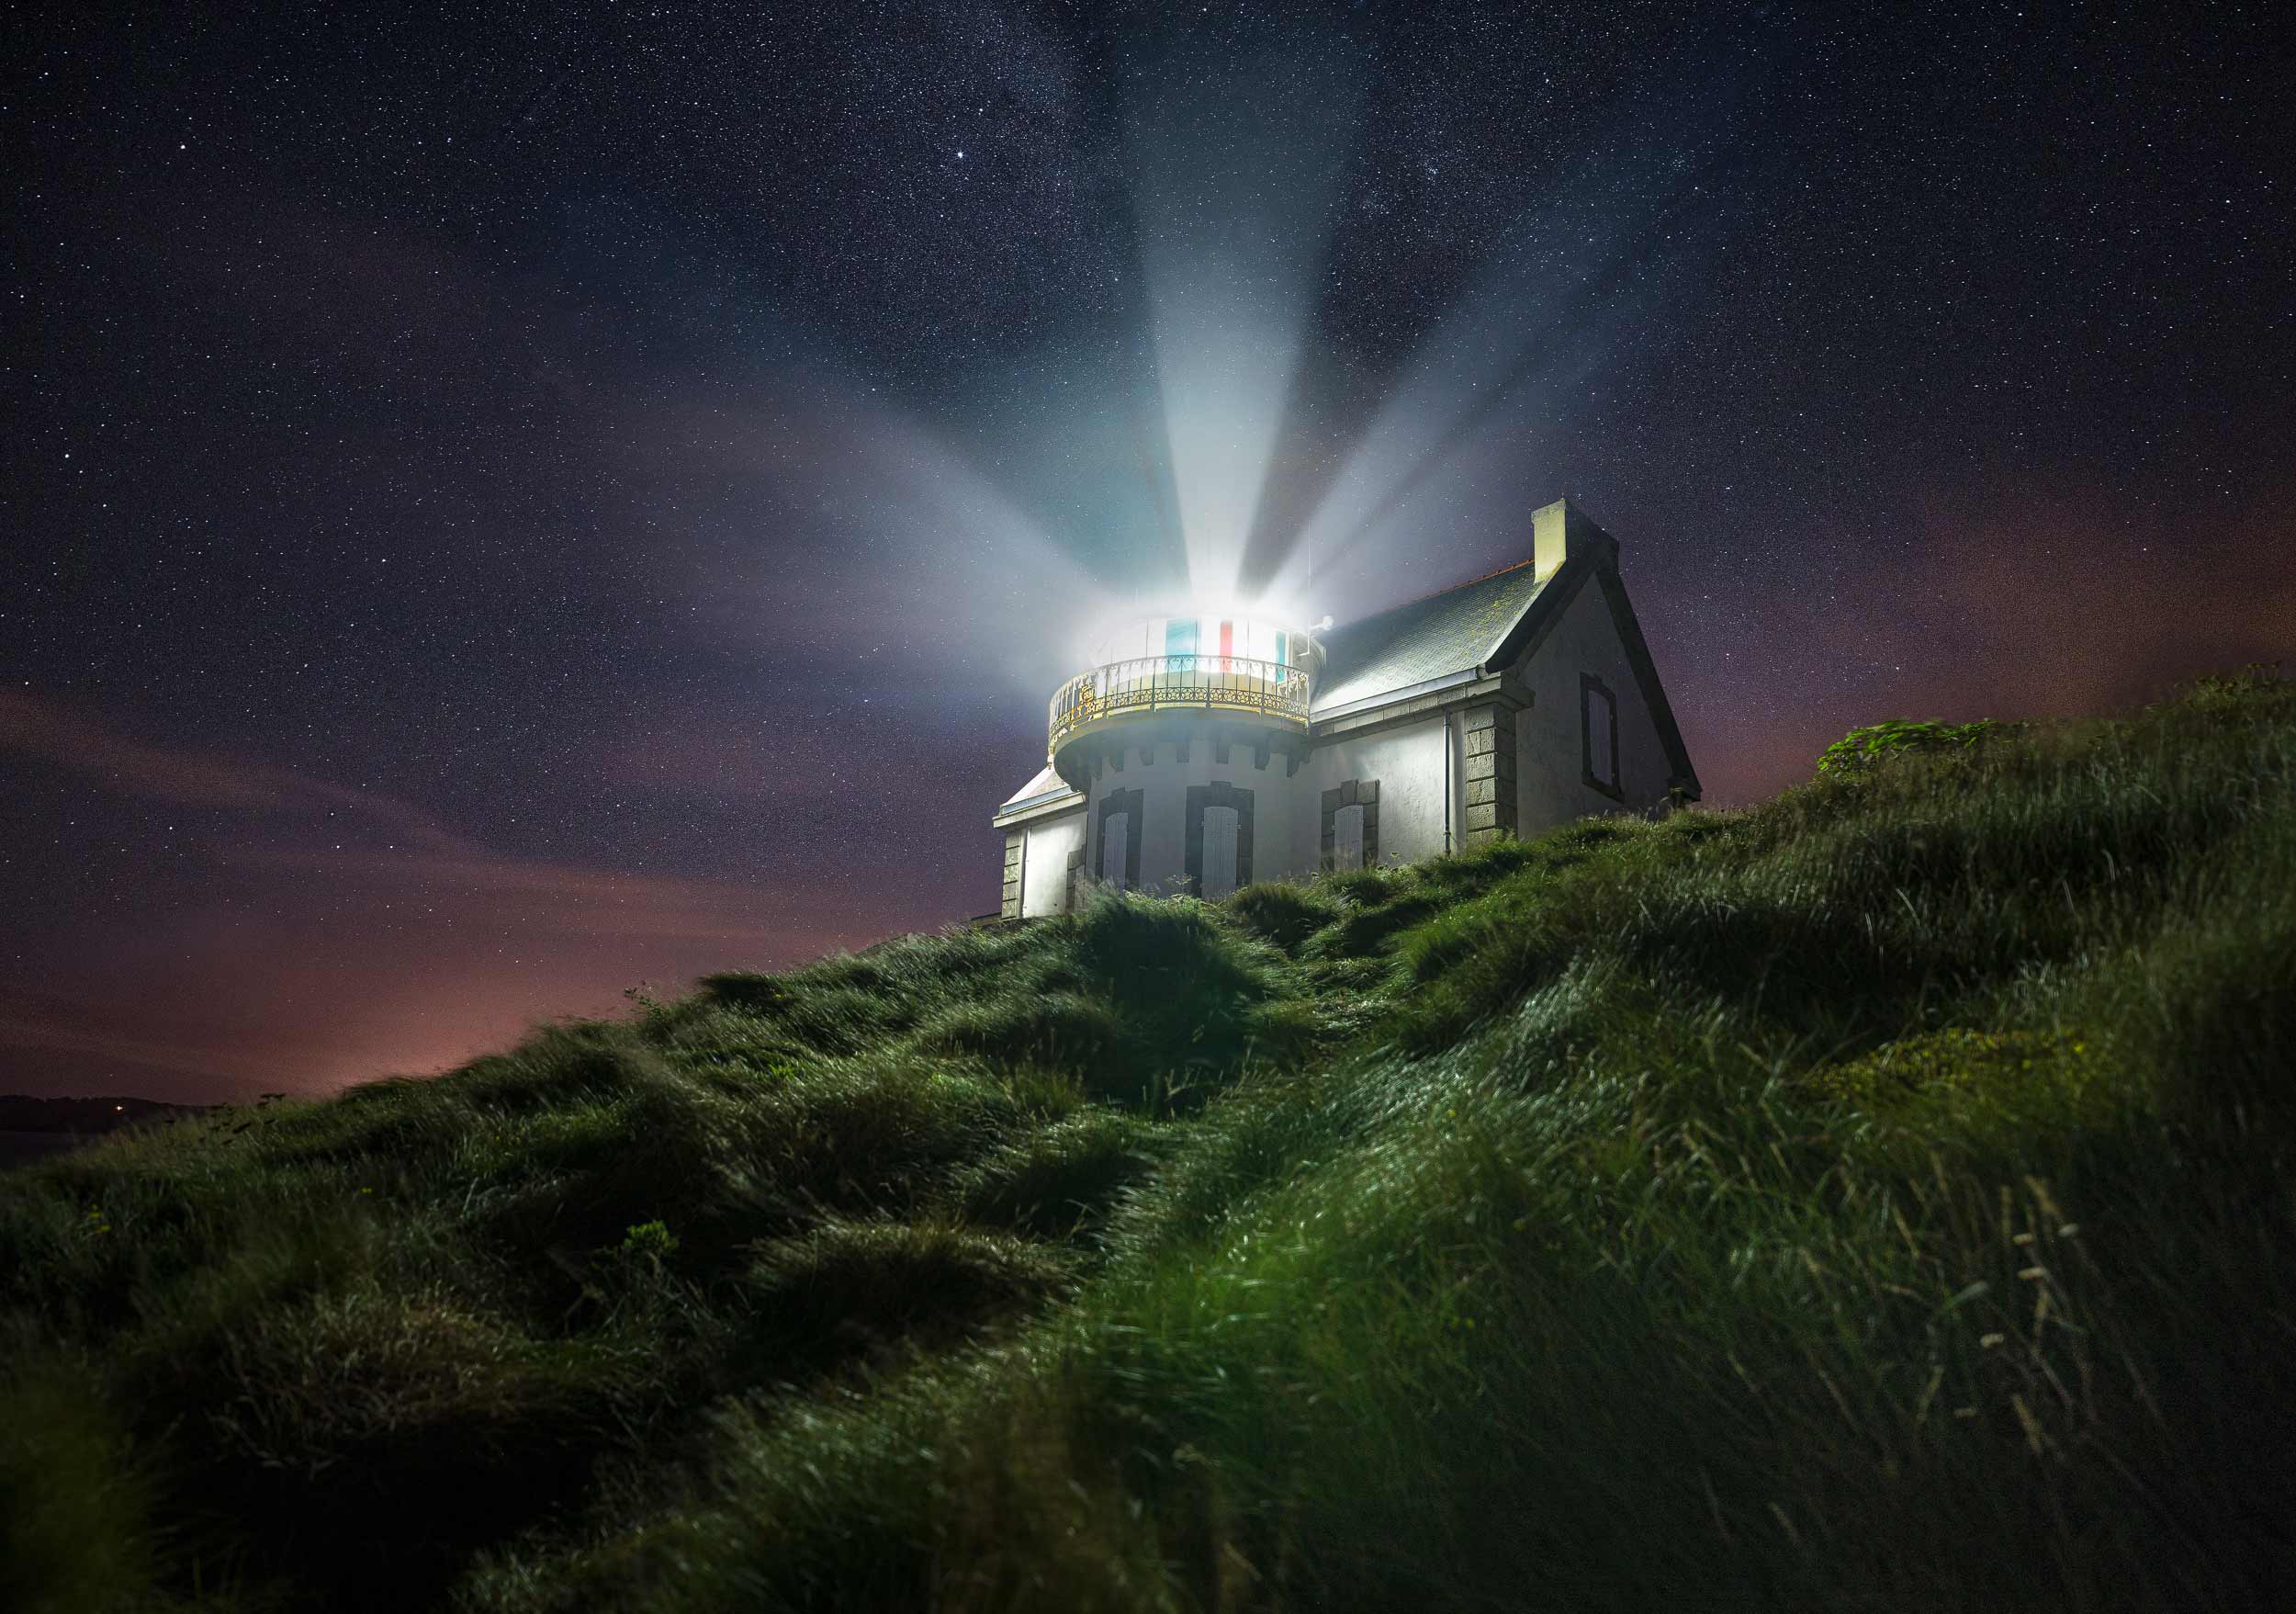 Faro di Millier di notte sotto il cielo stellato con il fascio luminoso della lanterna visibile